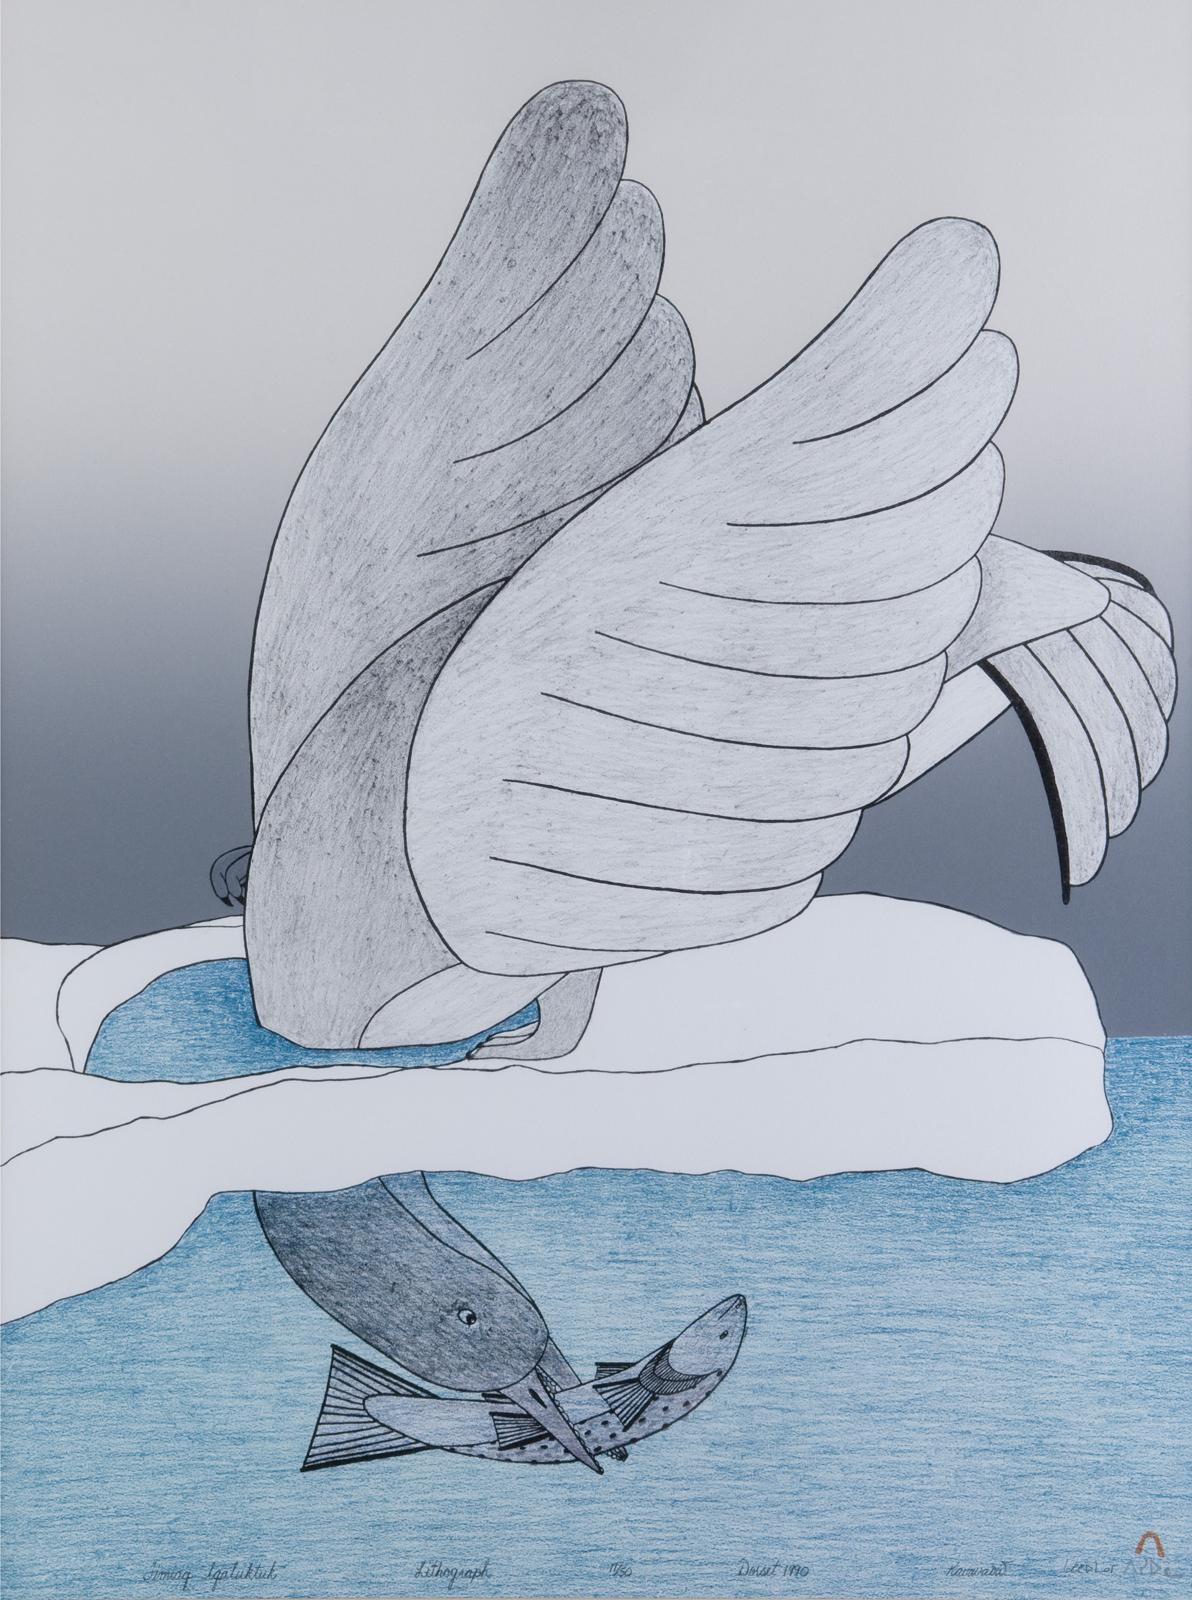 Qavavau Mannumi (1958) - Timiaq Iqalultuk (Bird Caught Its Fish)